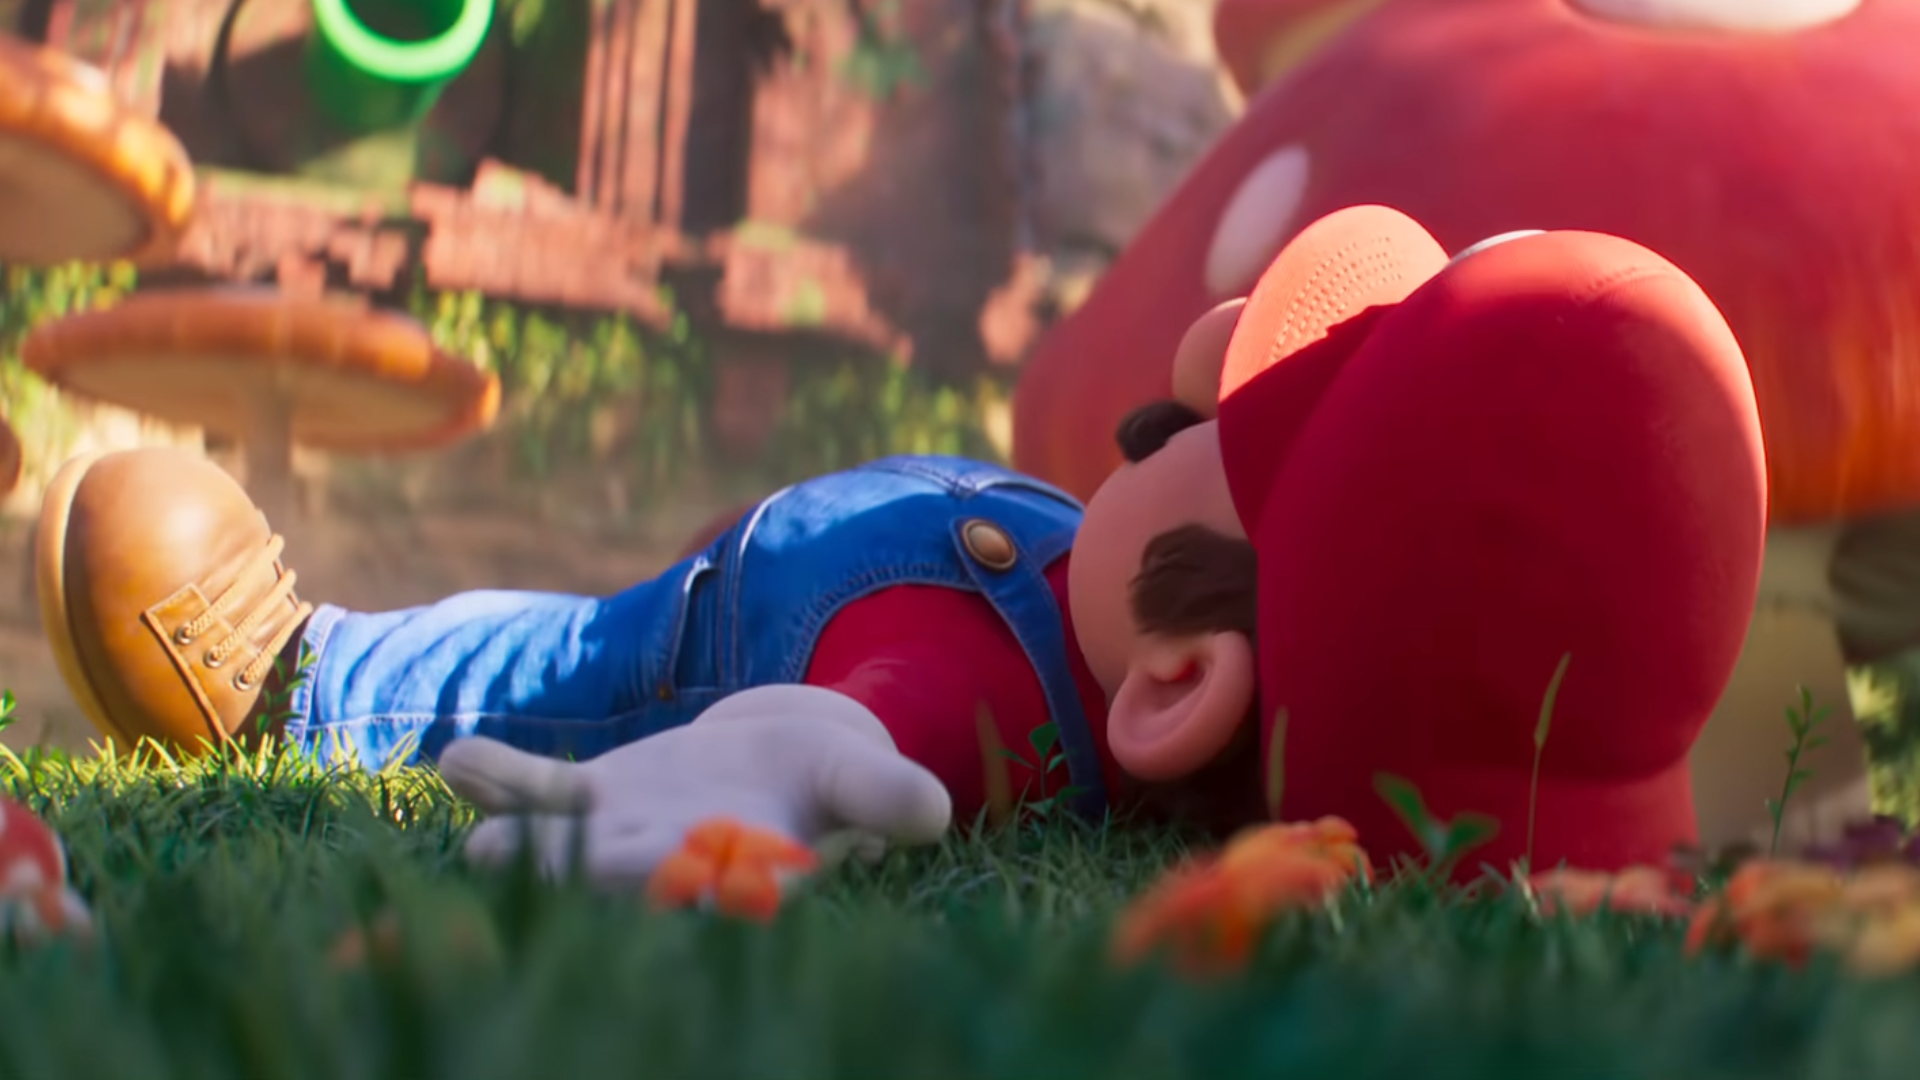 Mario lying down in the Super Mario Bros. Movie trailer